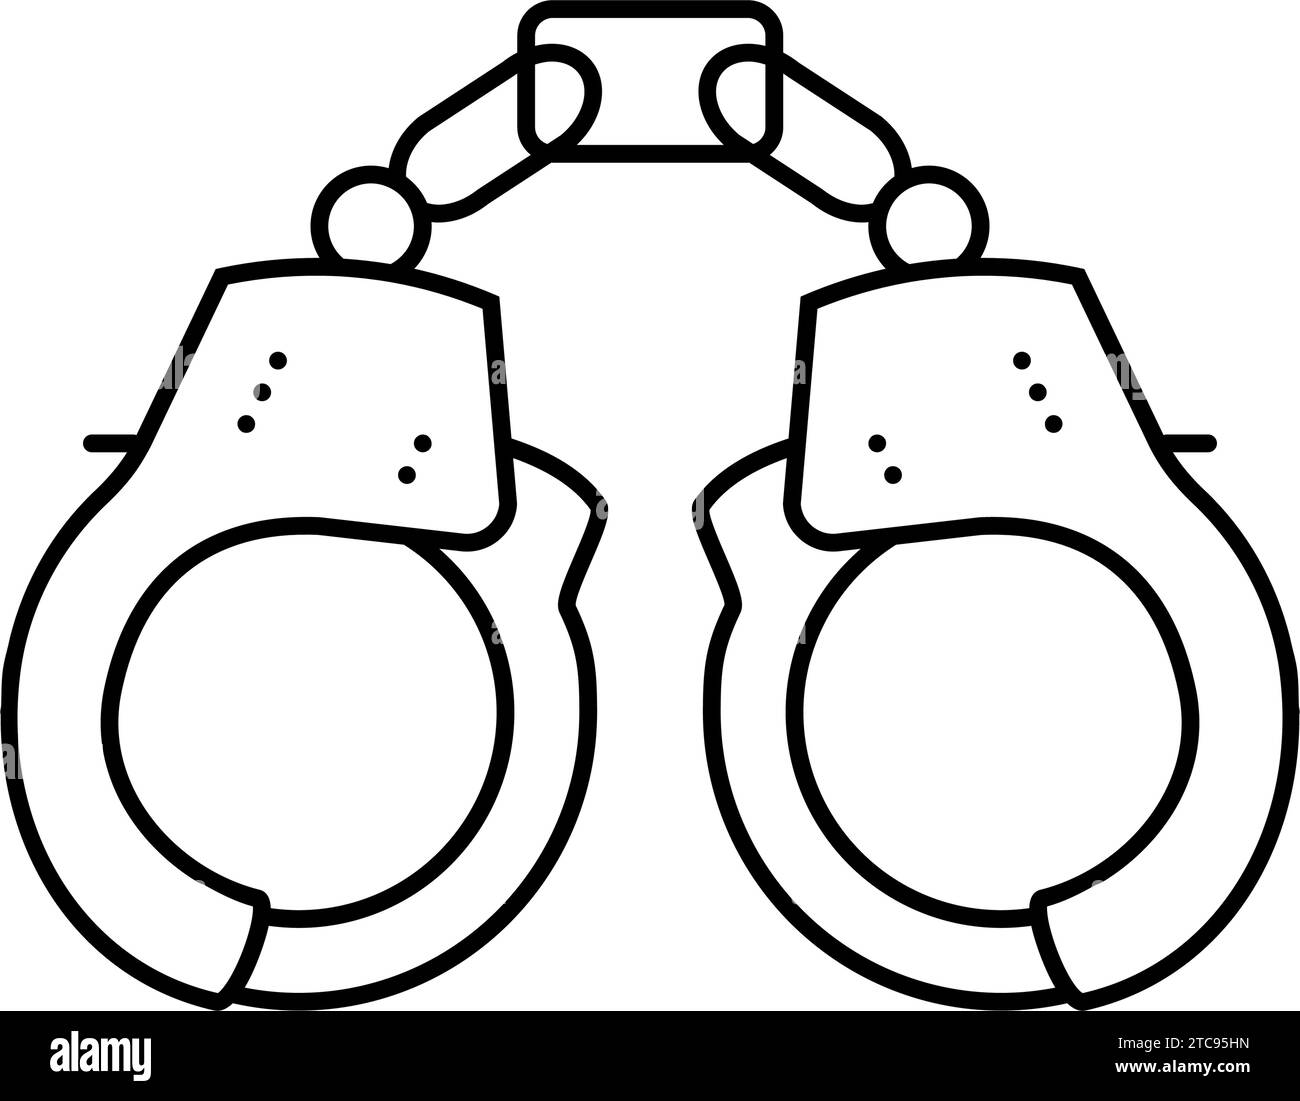 handcuffs crime line icon vector illustration Stock Vector